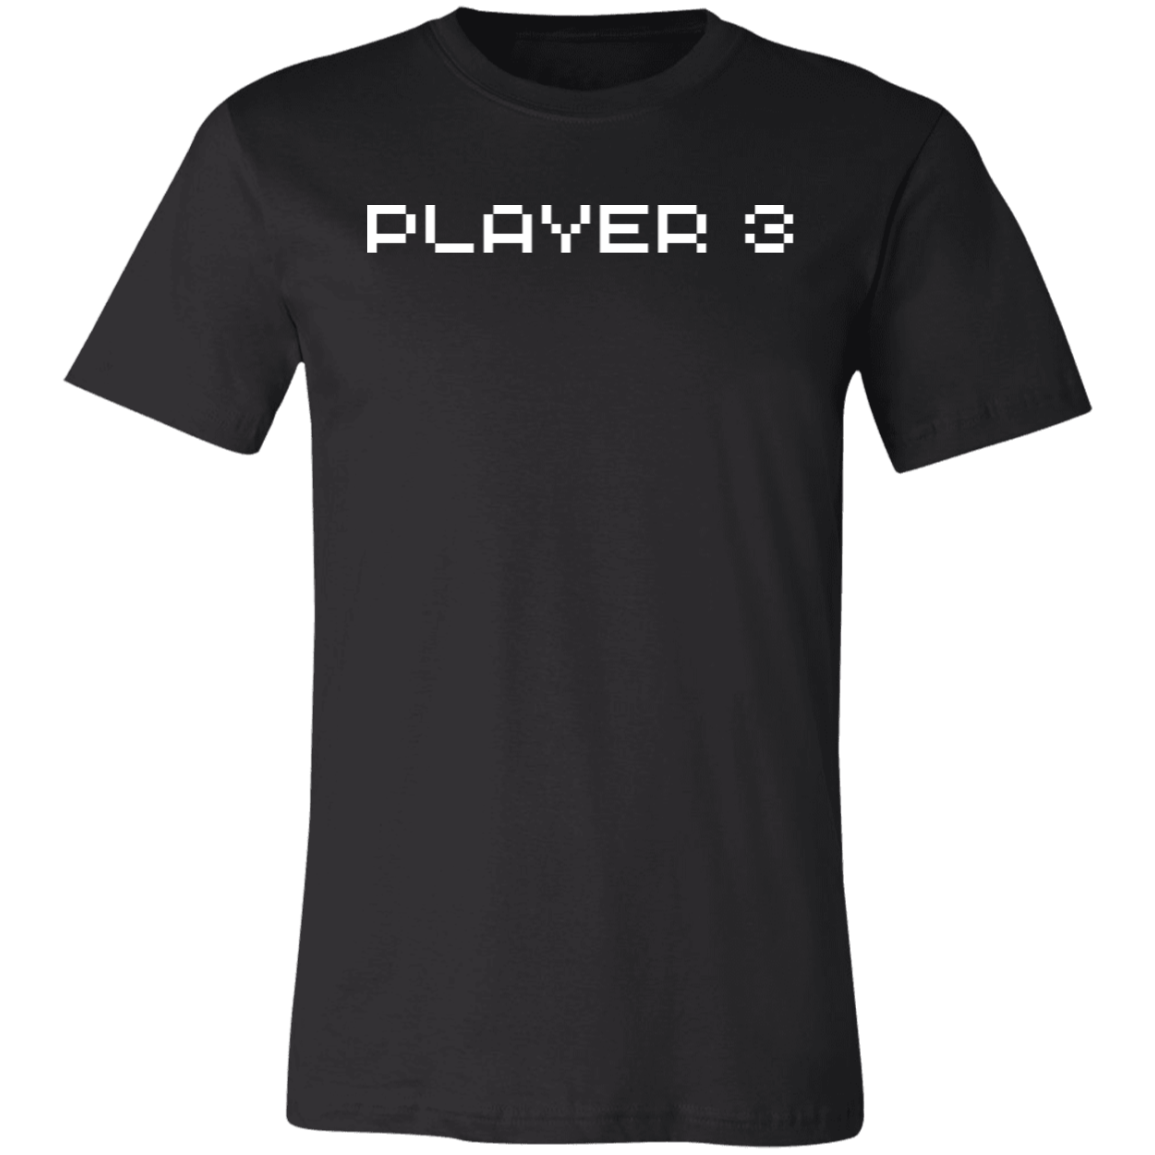 Player 3 Short-Sleeve T-Shirt